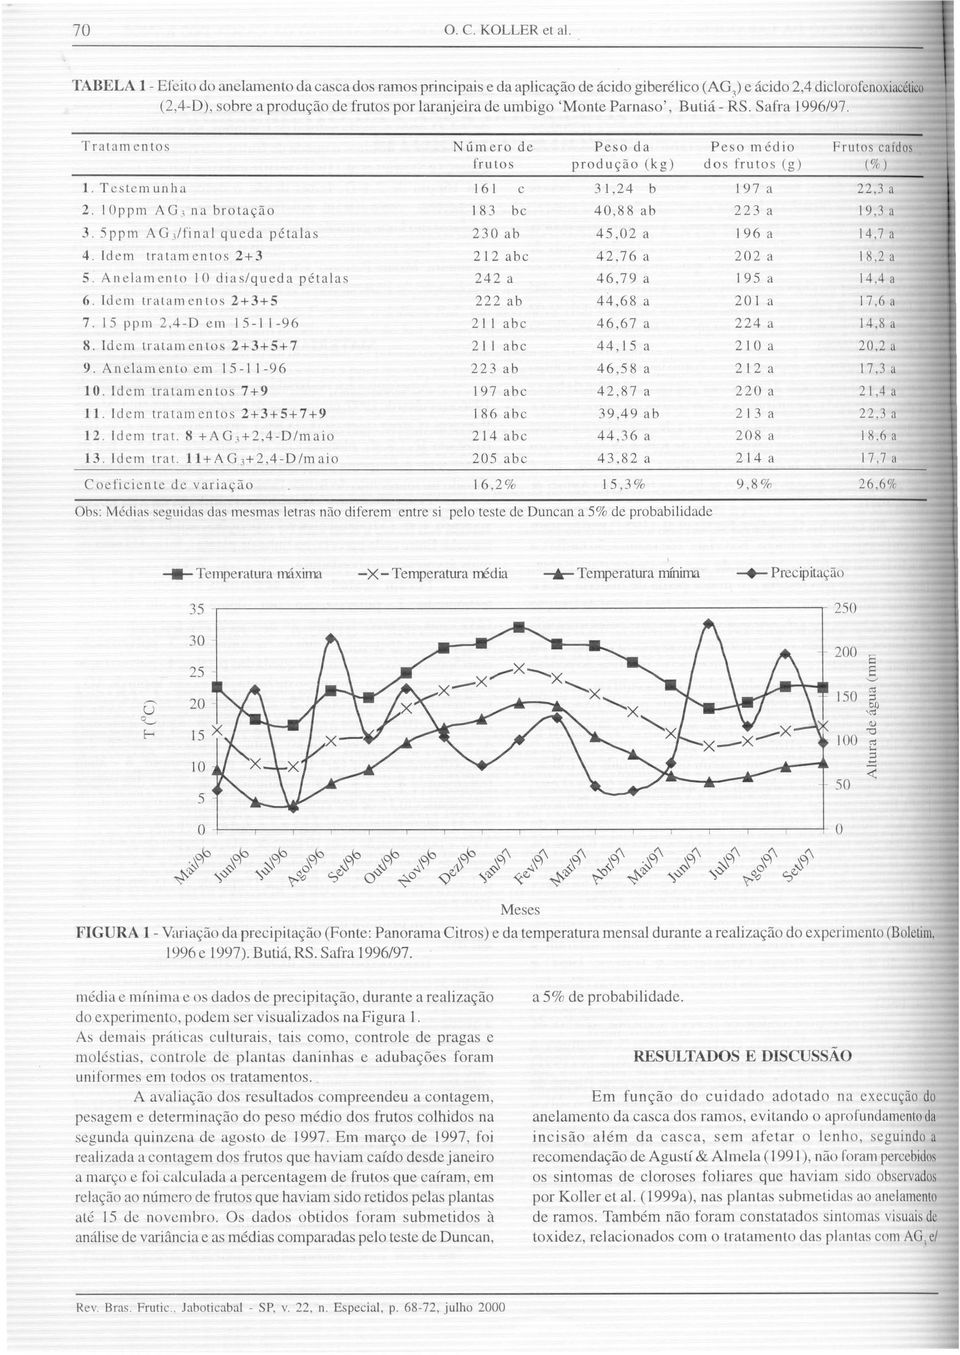 'Monte Parnaso', Butia - RS. Safra 1996/97. Tratam cntos Numerode Peso da Peso medio Frlltos cafdos frll tos prodllc;ao (kg) dos frlltos (g) (%) 1. Tcstcmllnha 161 c 31,24 b J 97 a 22,3 a 2.